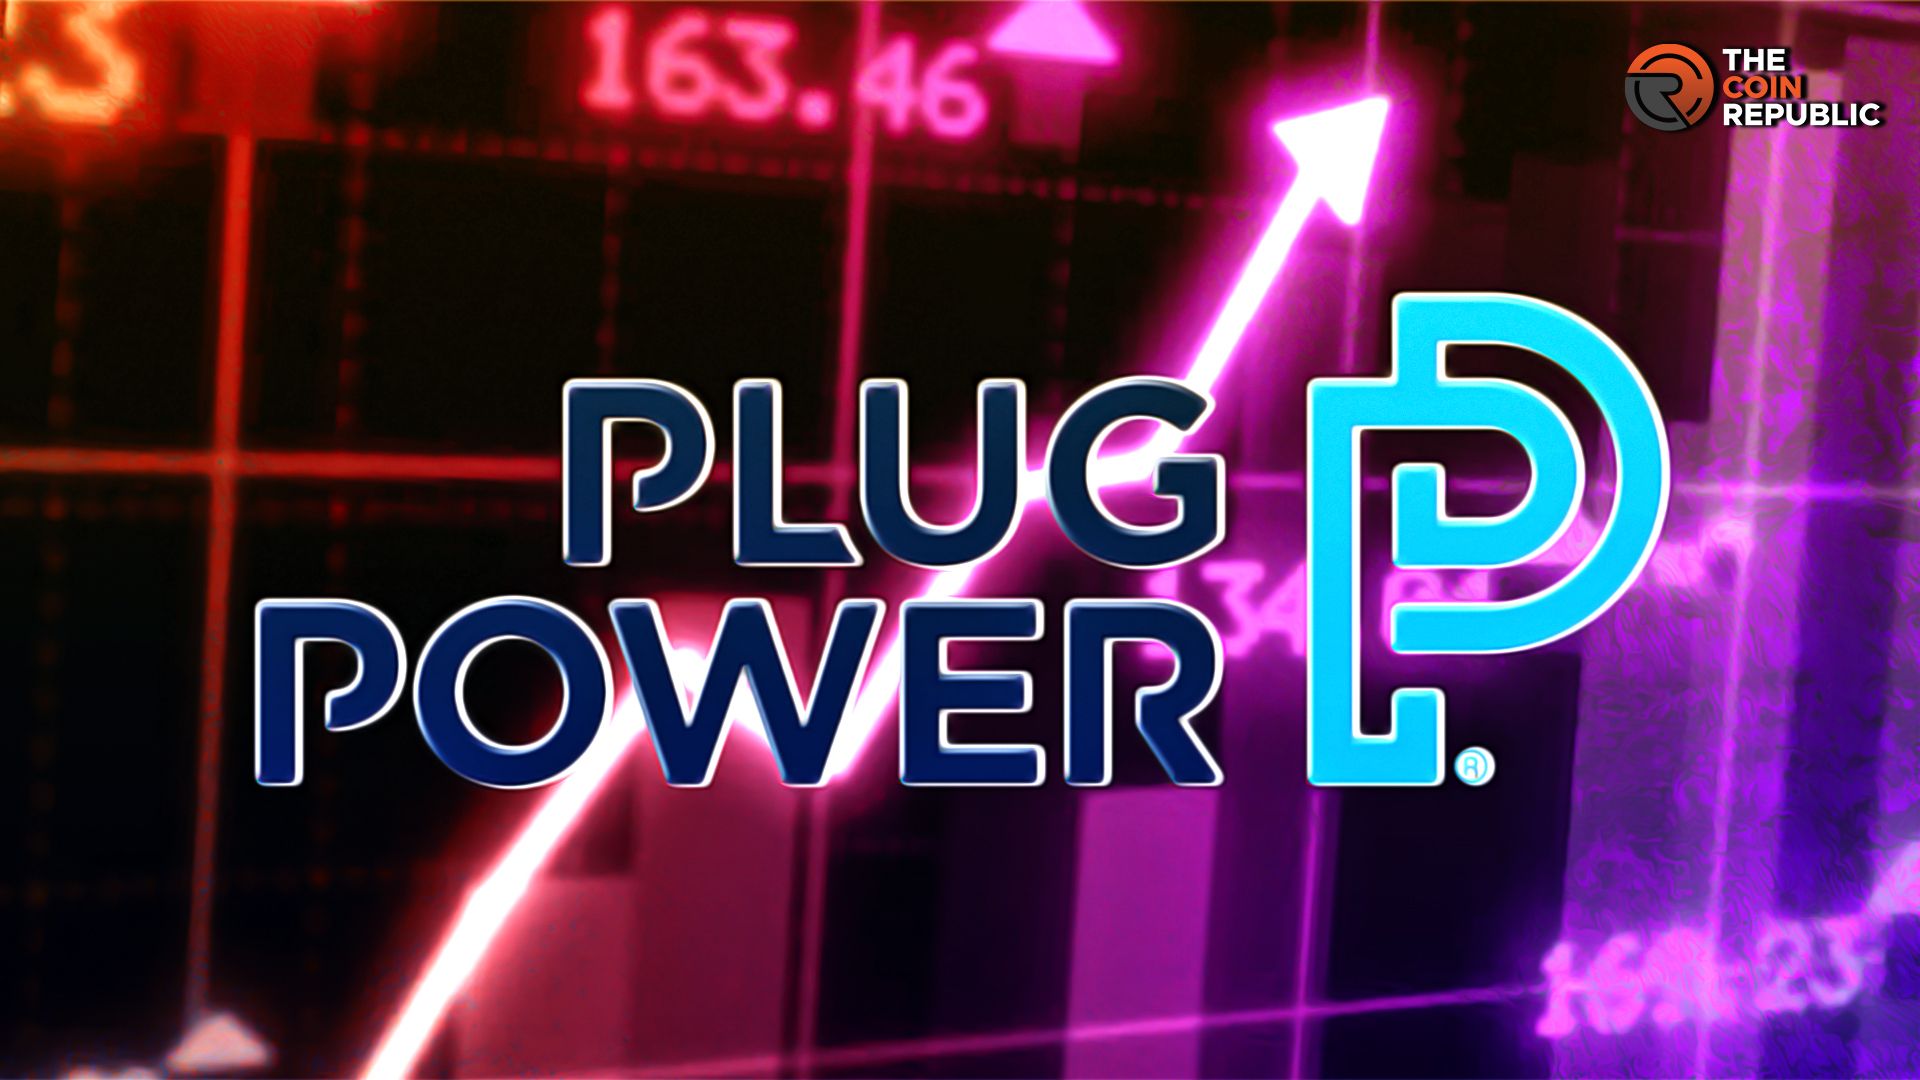 PLUG Stock: Will Plug Power Stock Price Break the 50 EMA?